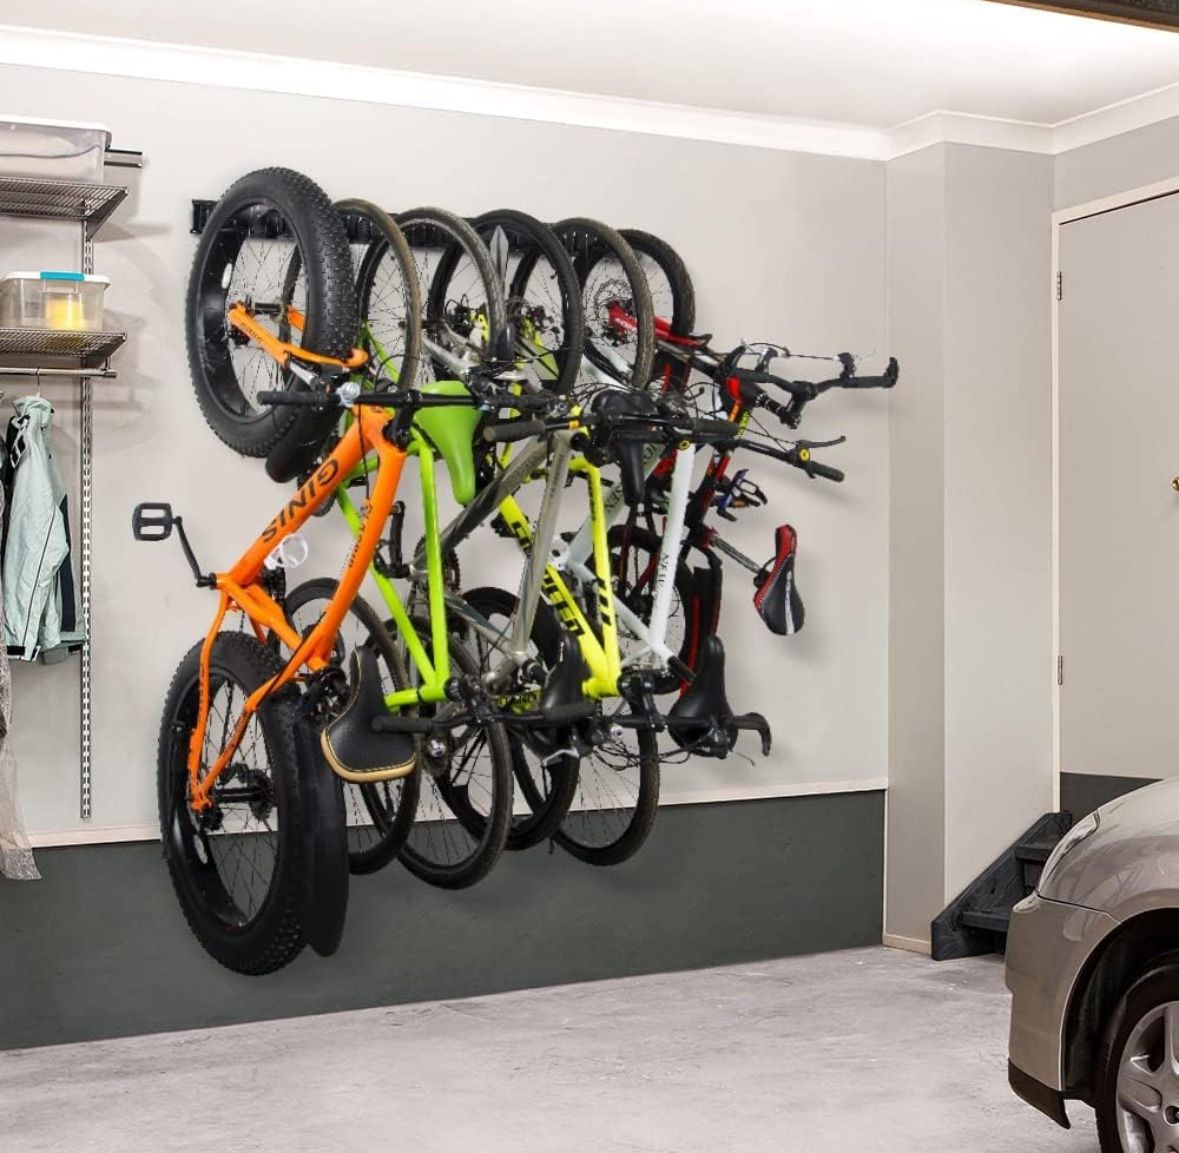 Bike Storage Rack For 6 Bikes, Holds 300lbs - Ultrawall